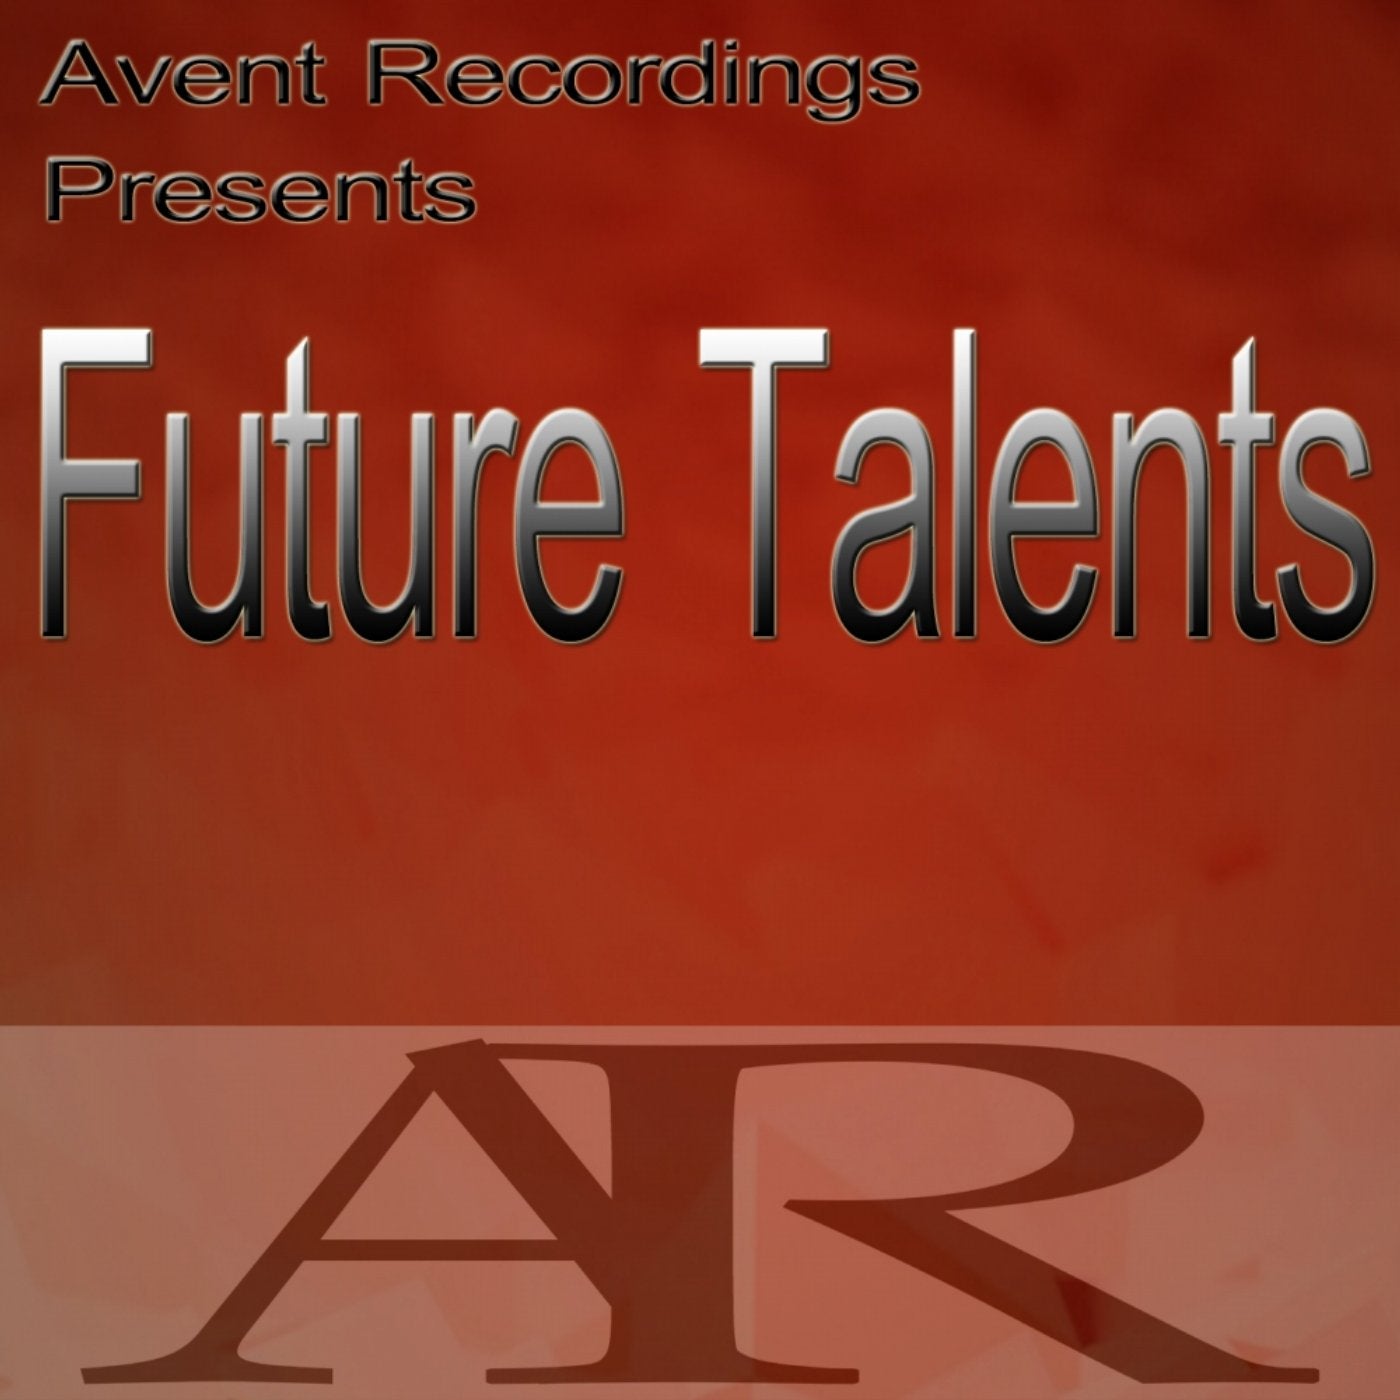 Future Talents